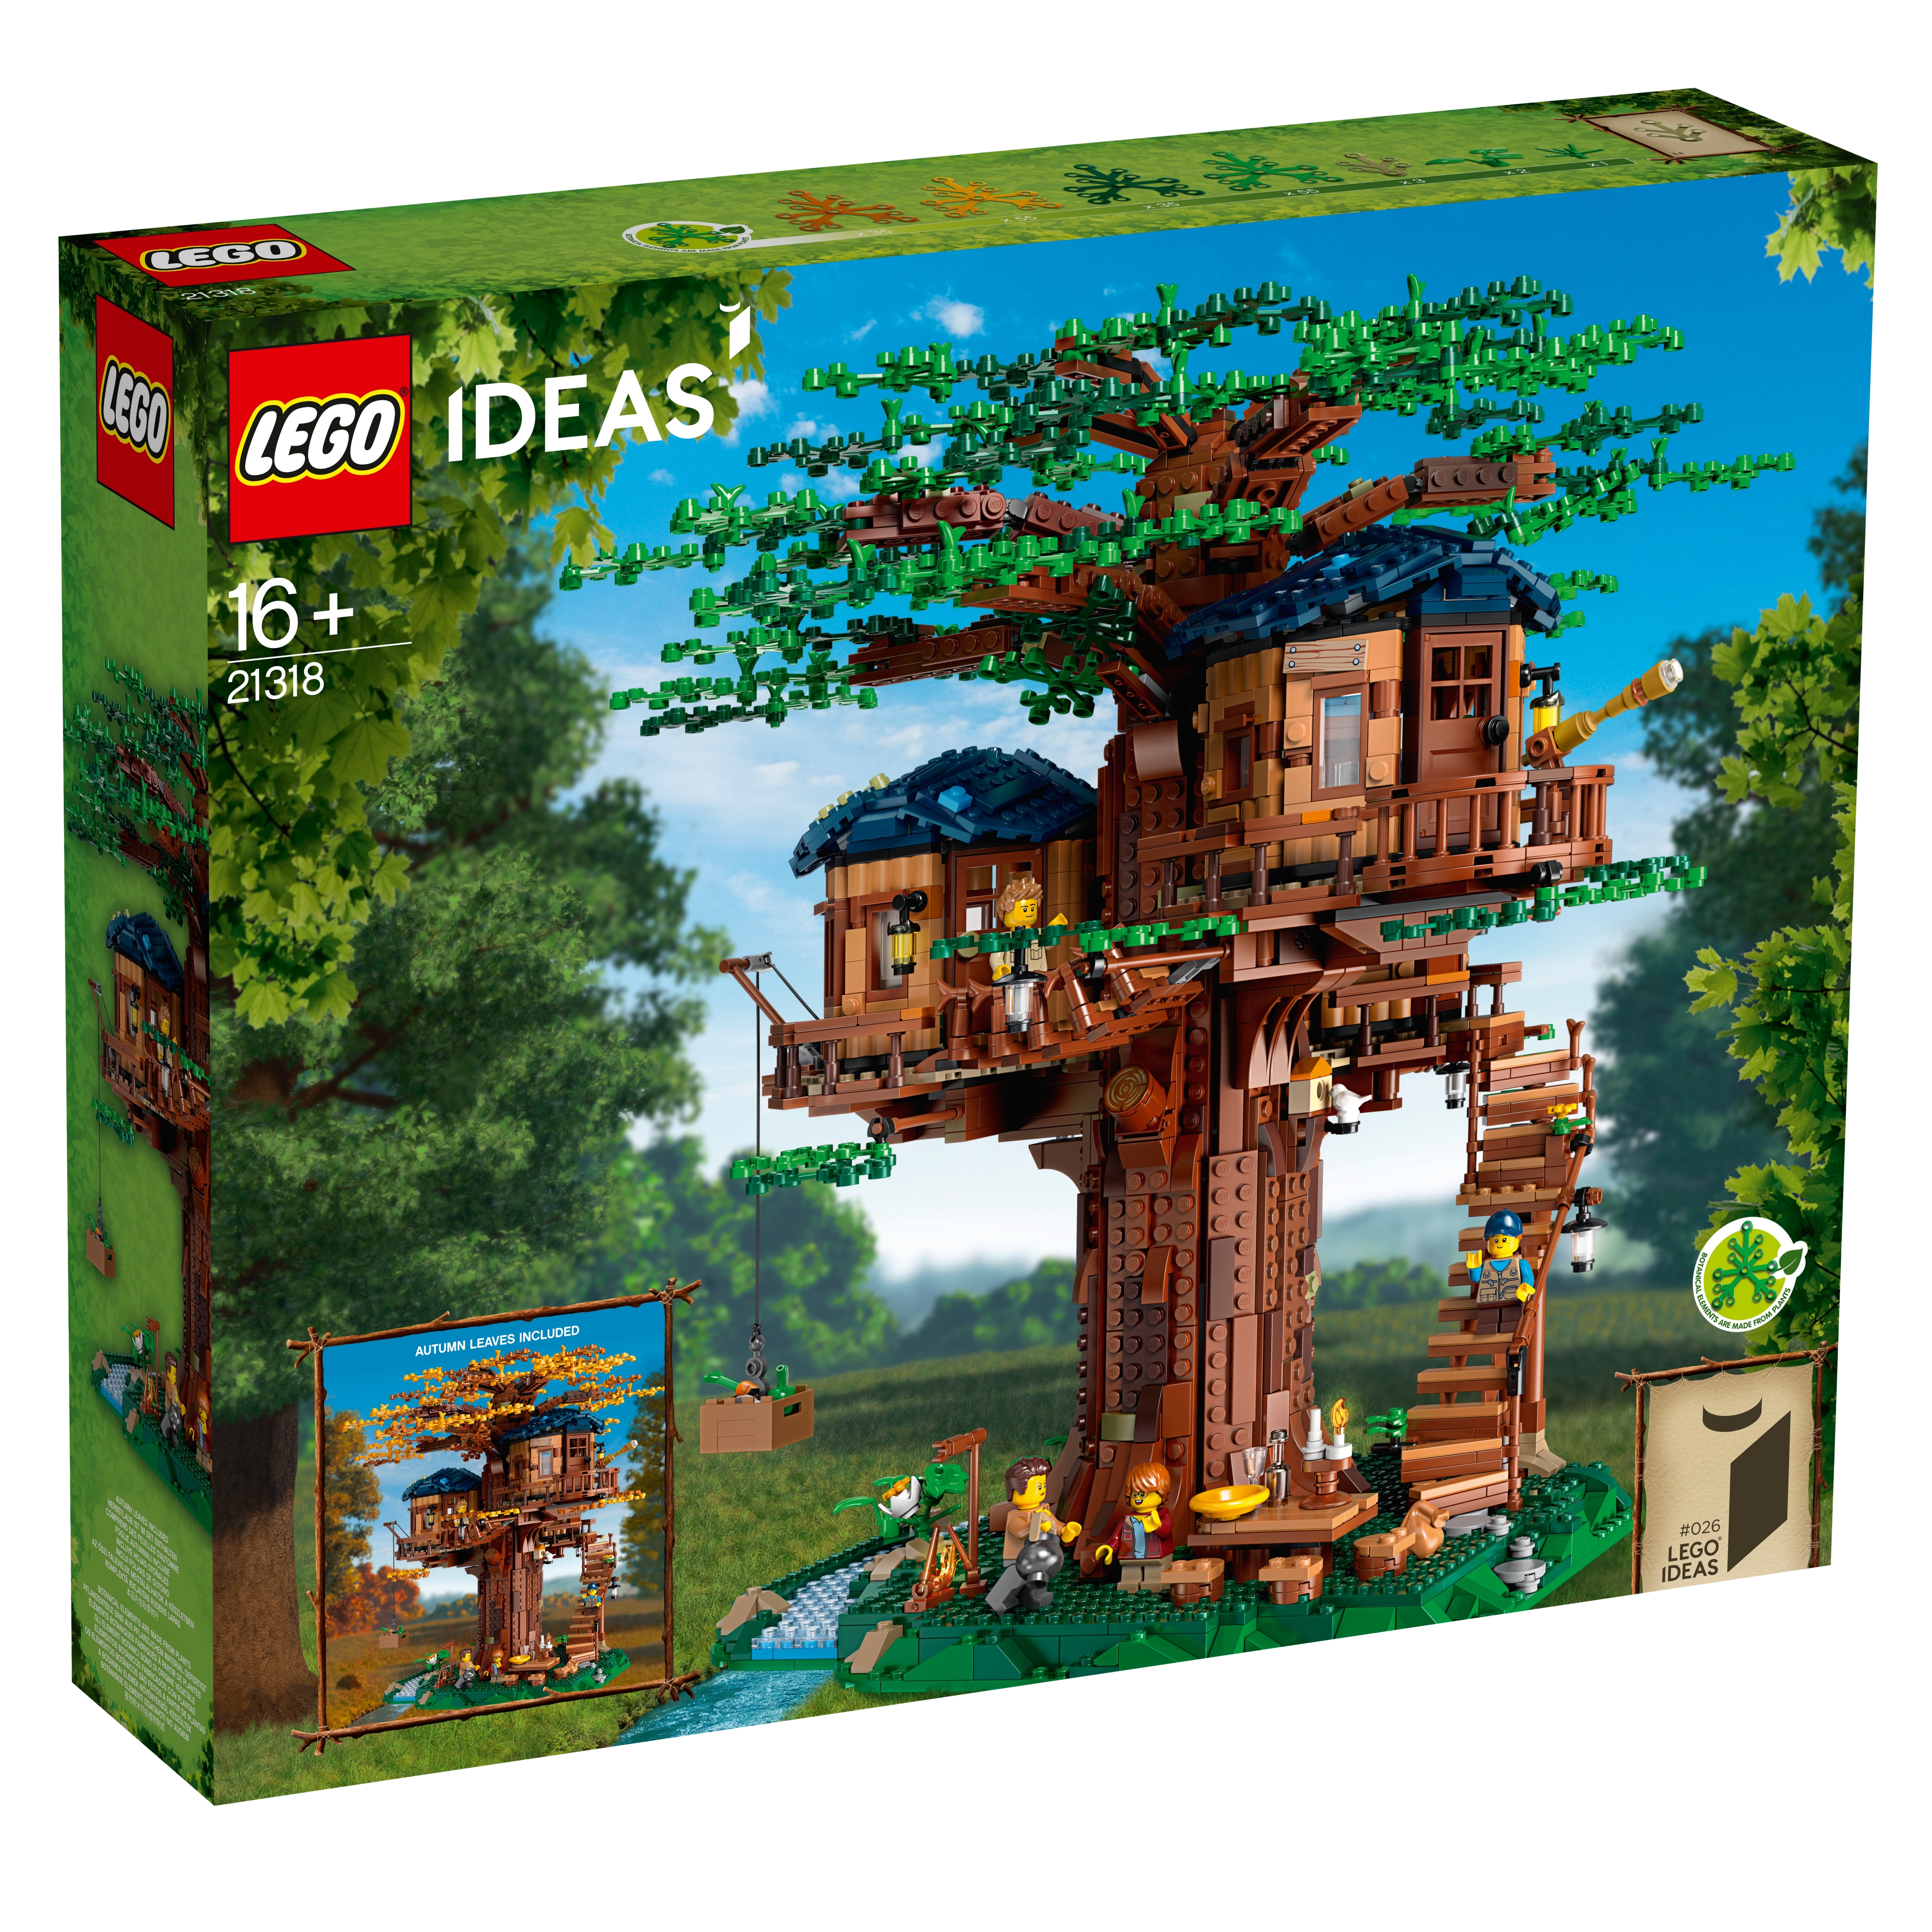 CASA SULL'ALBERO LEGO IDEAS 21318 